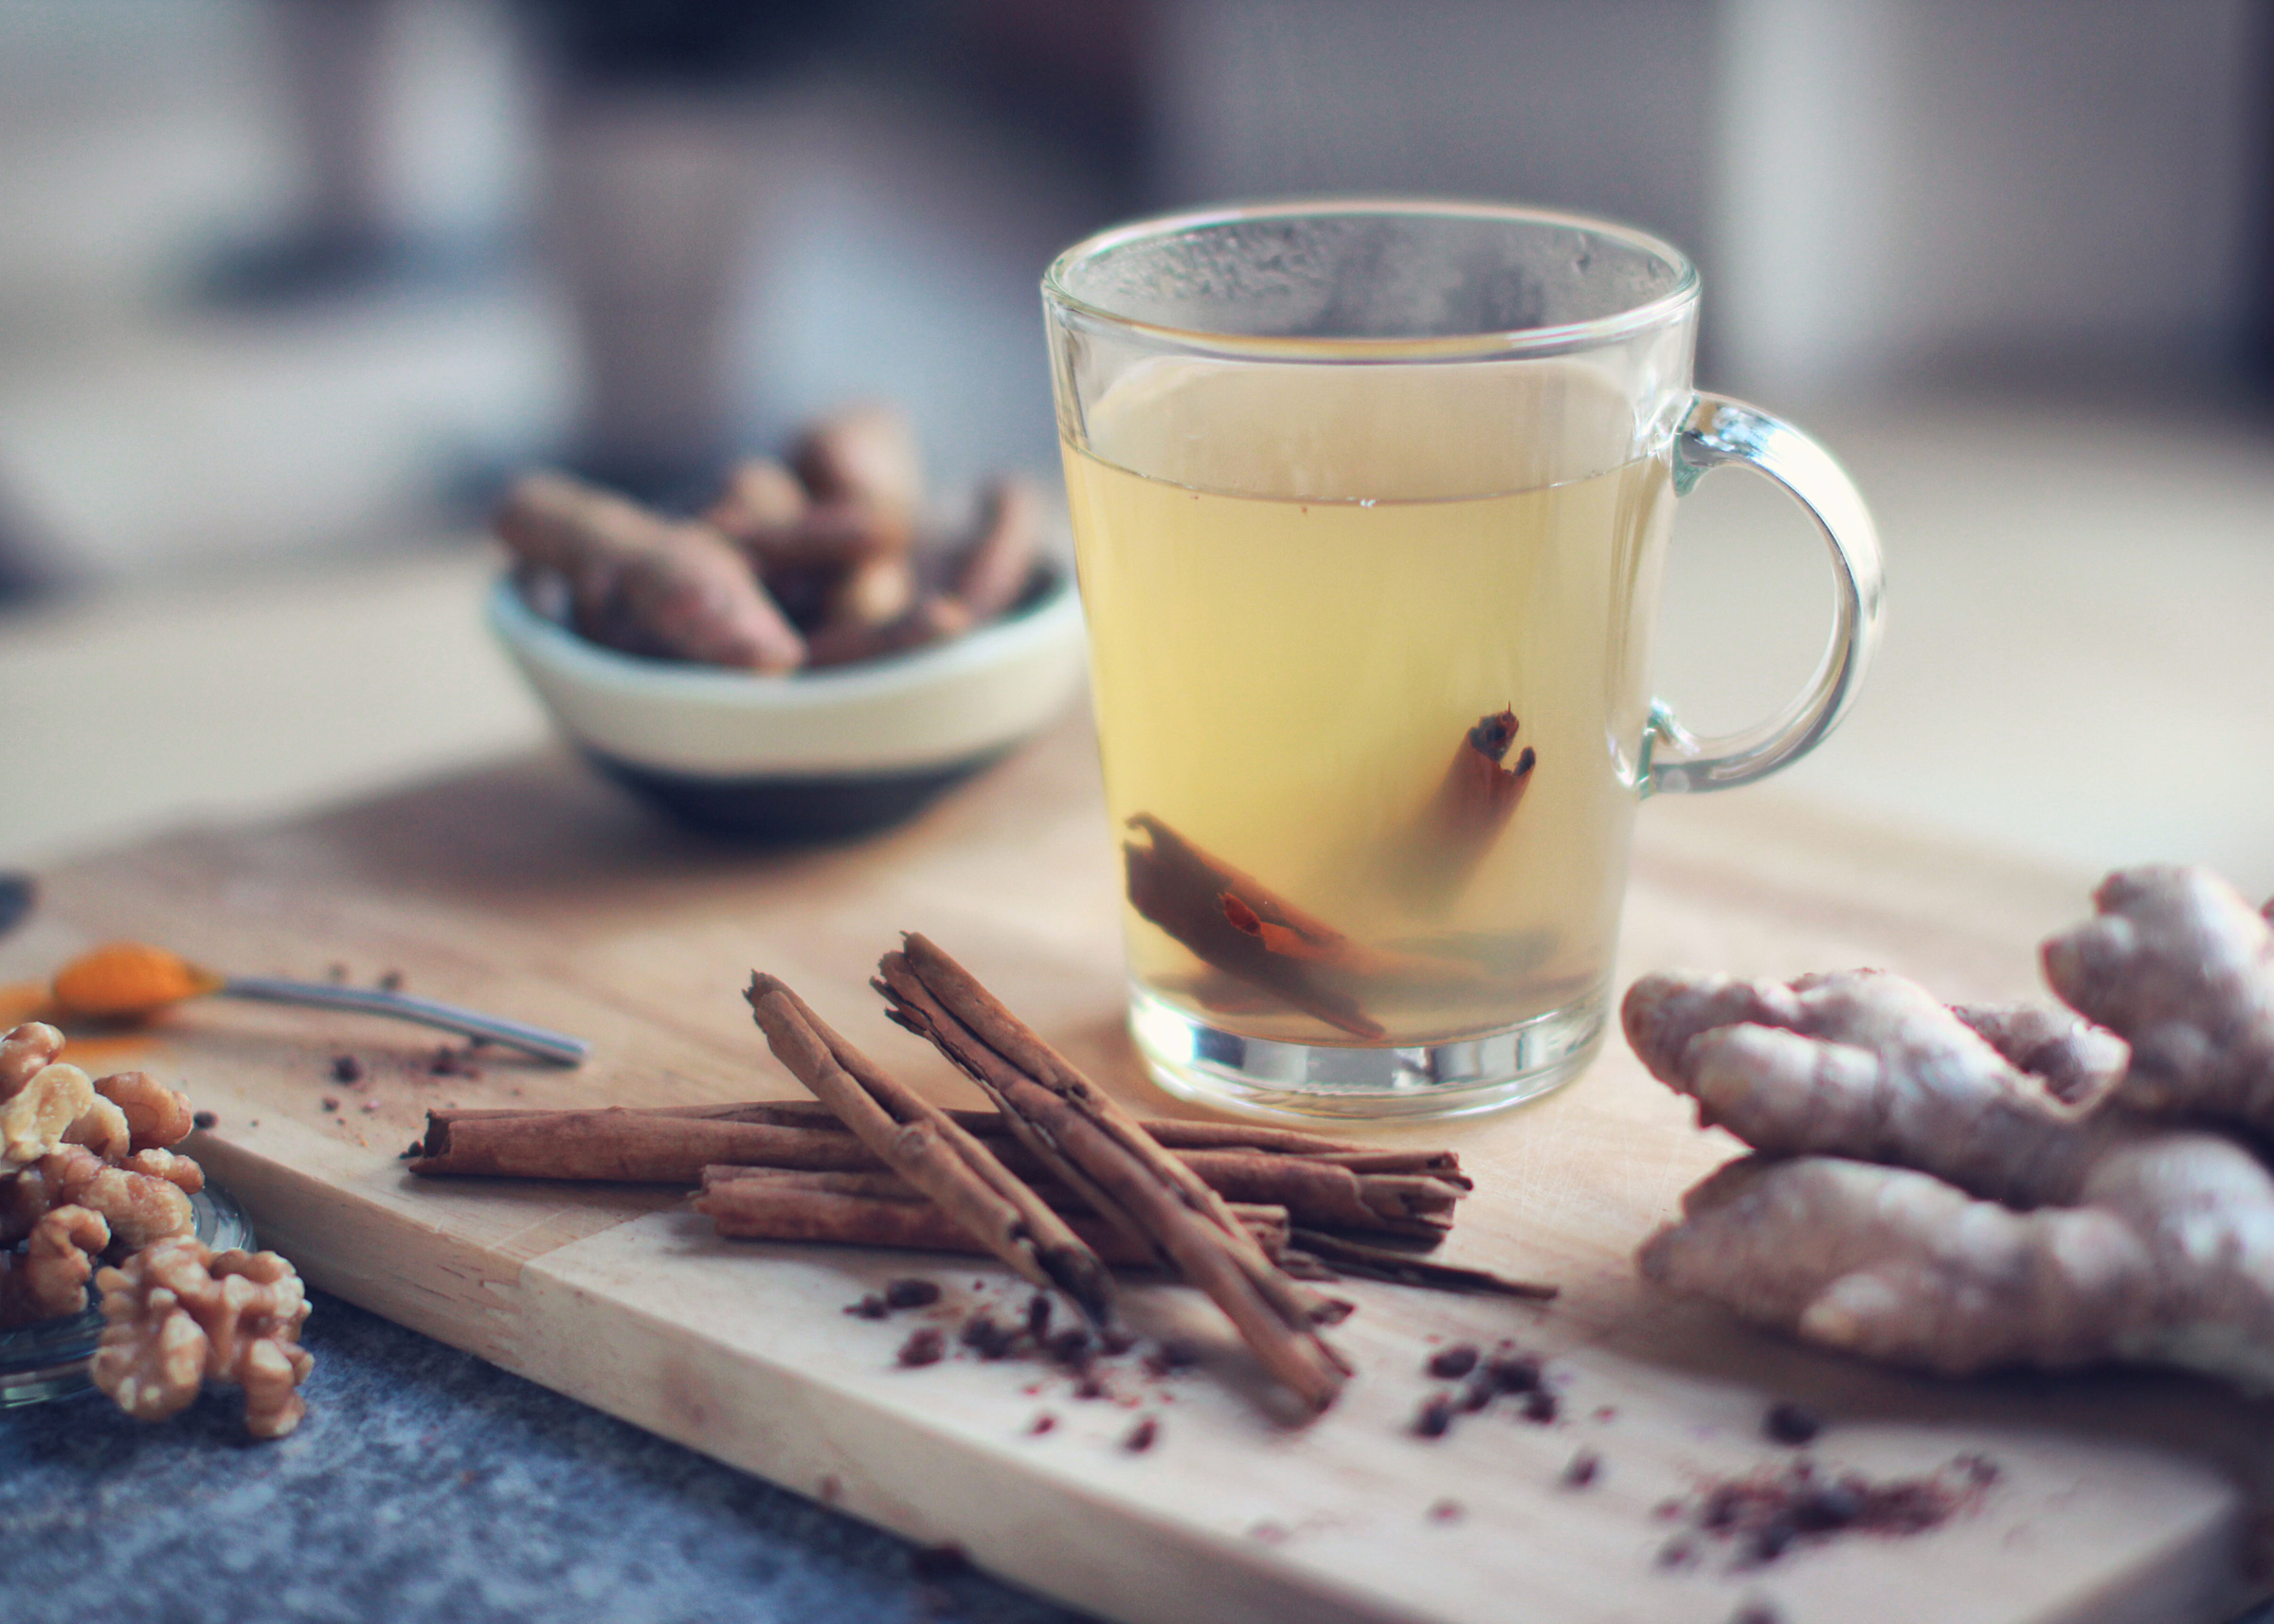 Чай с корицей укрепляет иммунитет и поднимает настроение. Фото © Unsplash